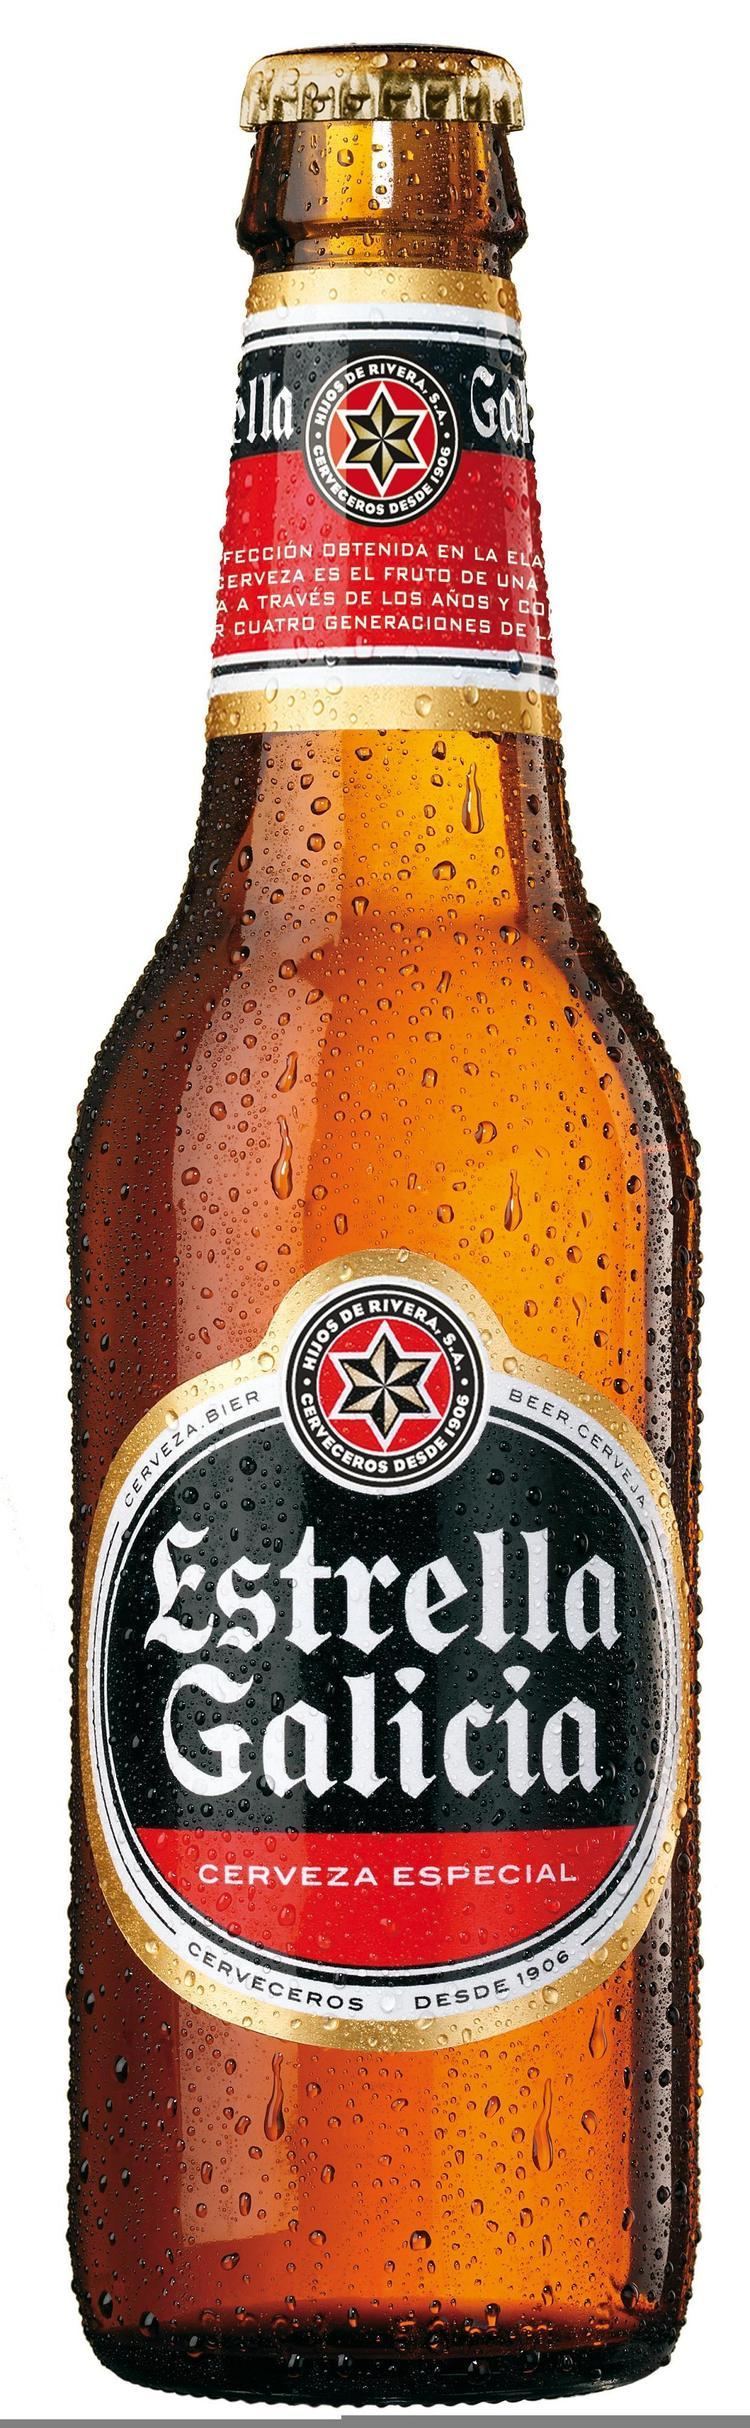 Estrella Galicia Estrella Galicia Spain Beers Pinterest Spain